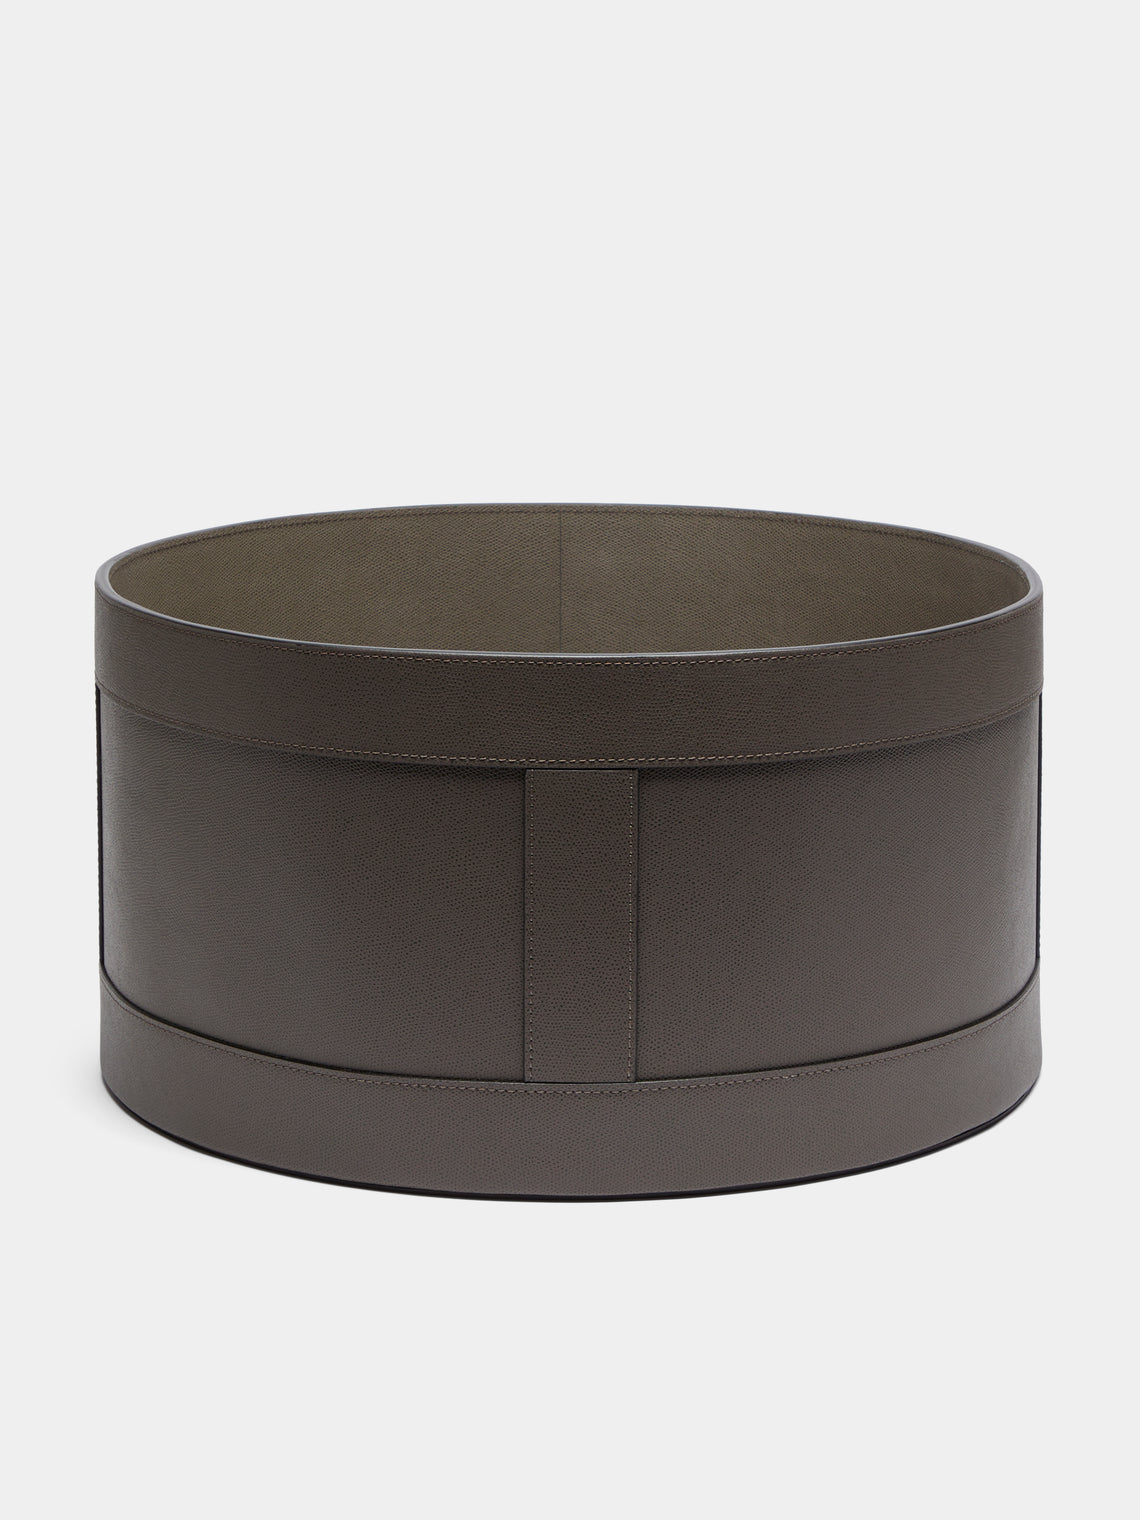 Giobagnara - Leather Circular Storage Basket - Taupe - ABASK - 